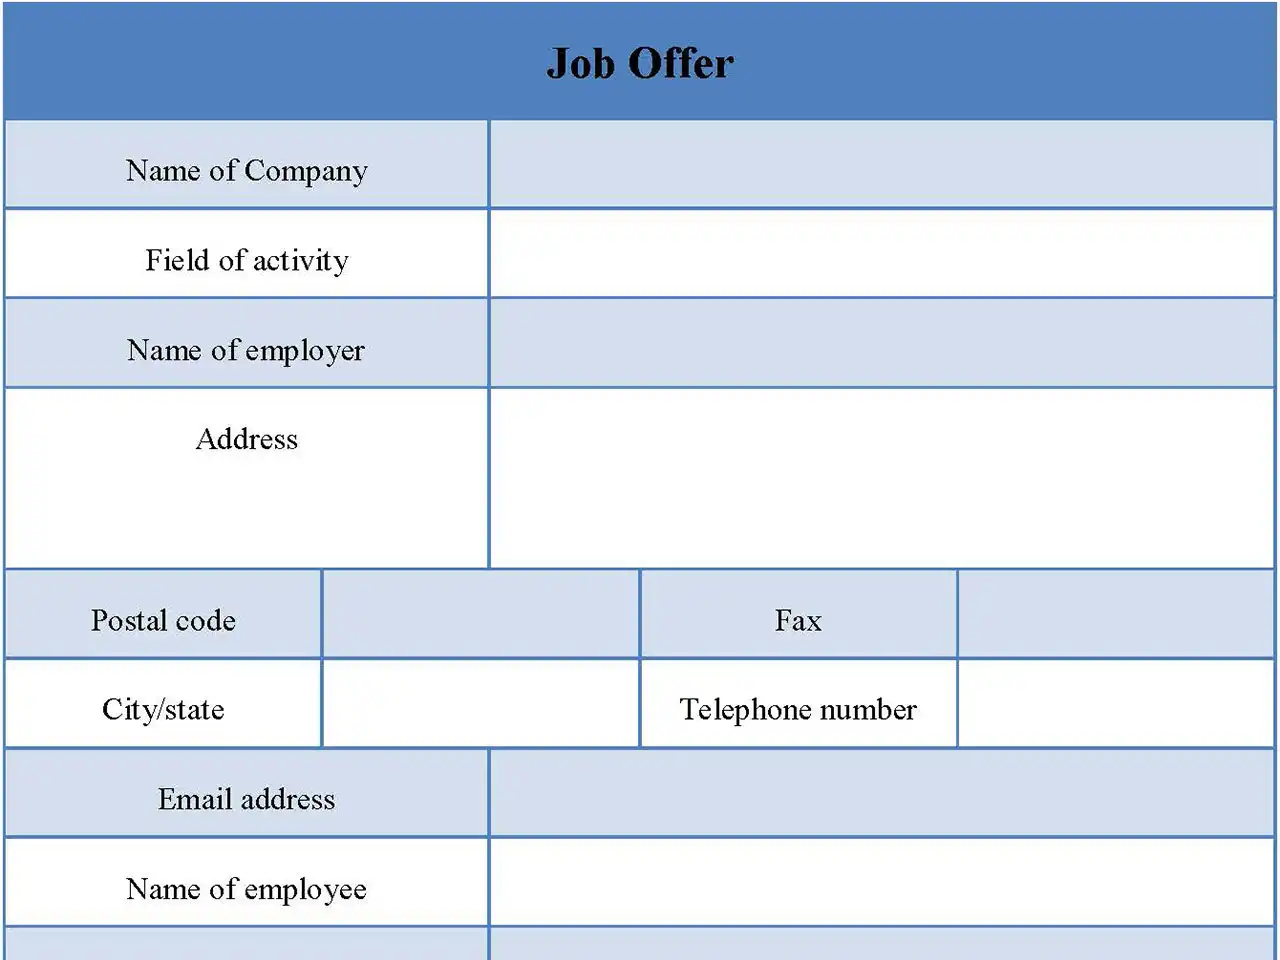 Job Offer Form